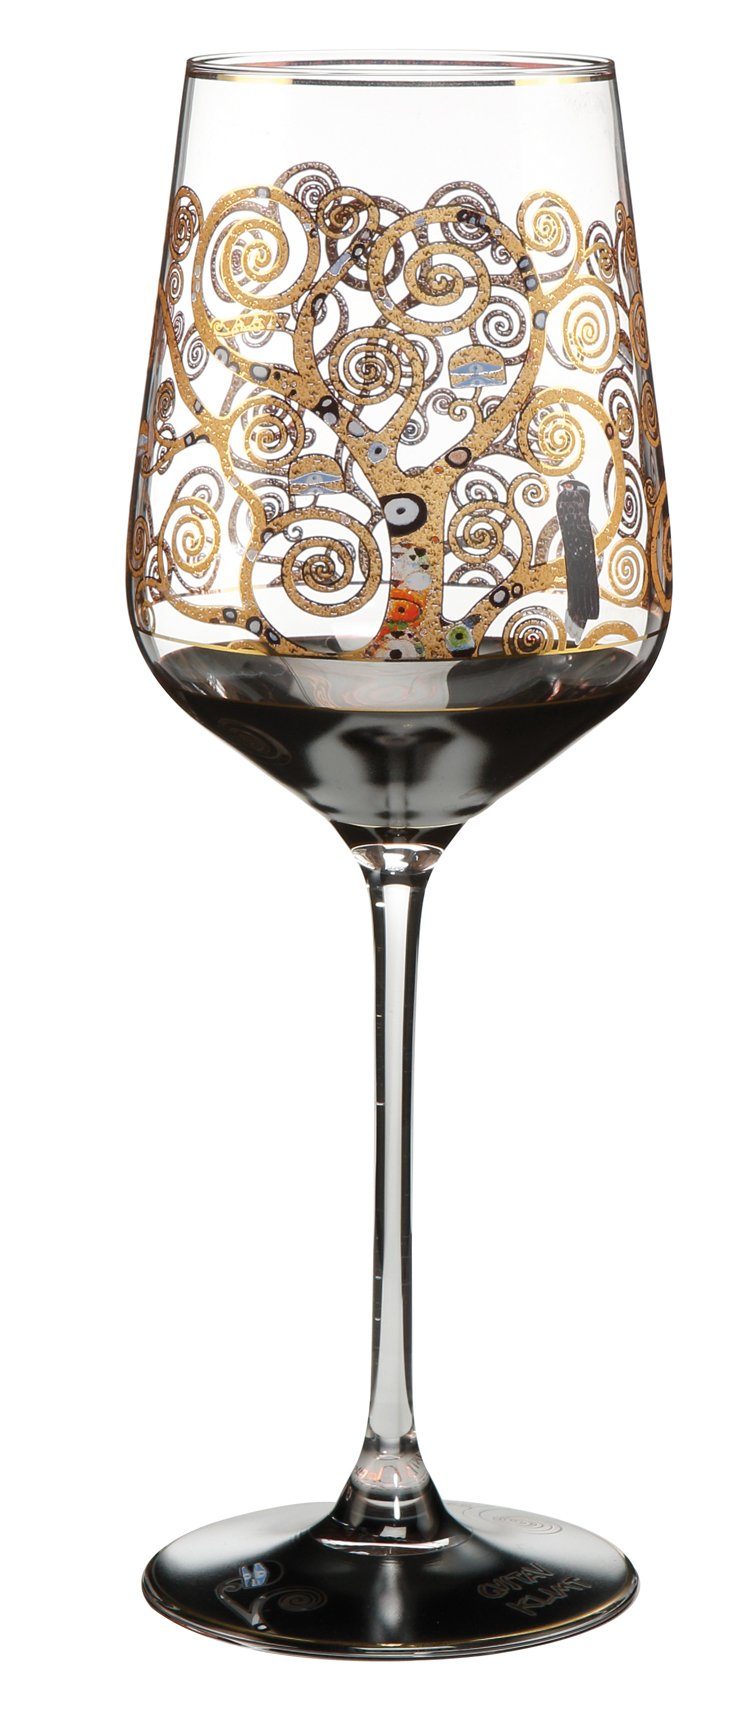 Goebel Weinglas Der Lebensbaum - Weingläser Artis Orbis Gustav Klimt, Glas